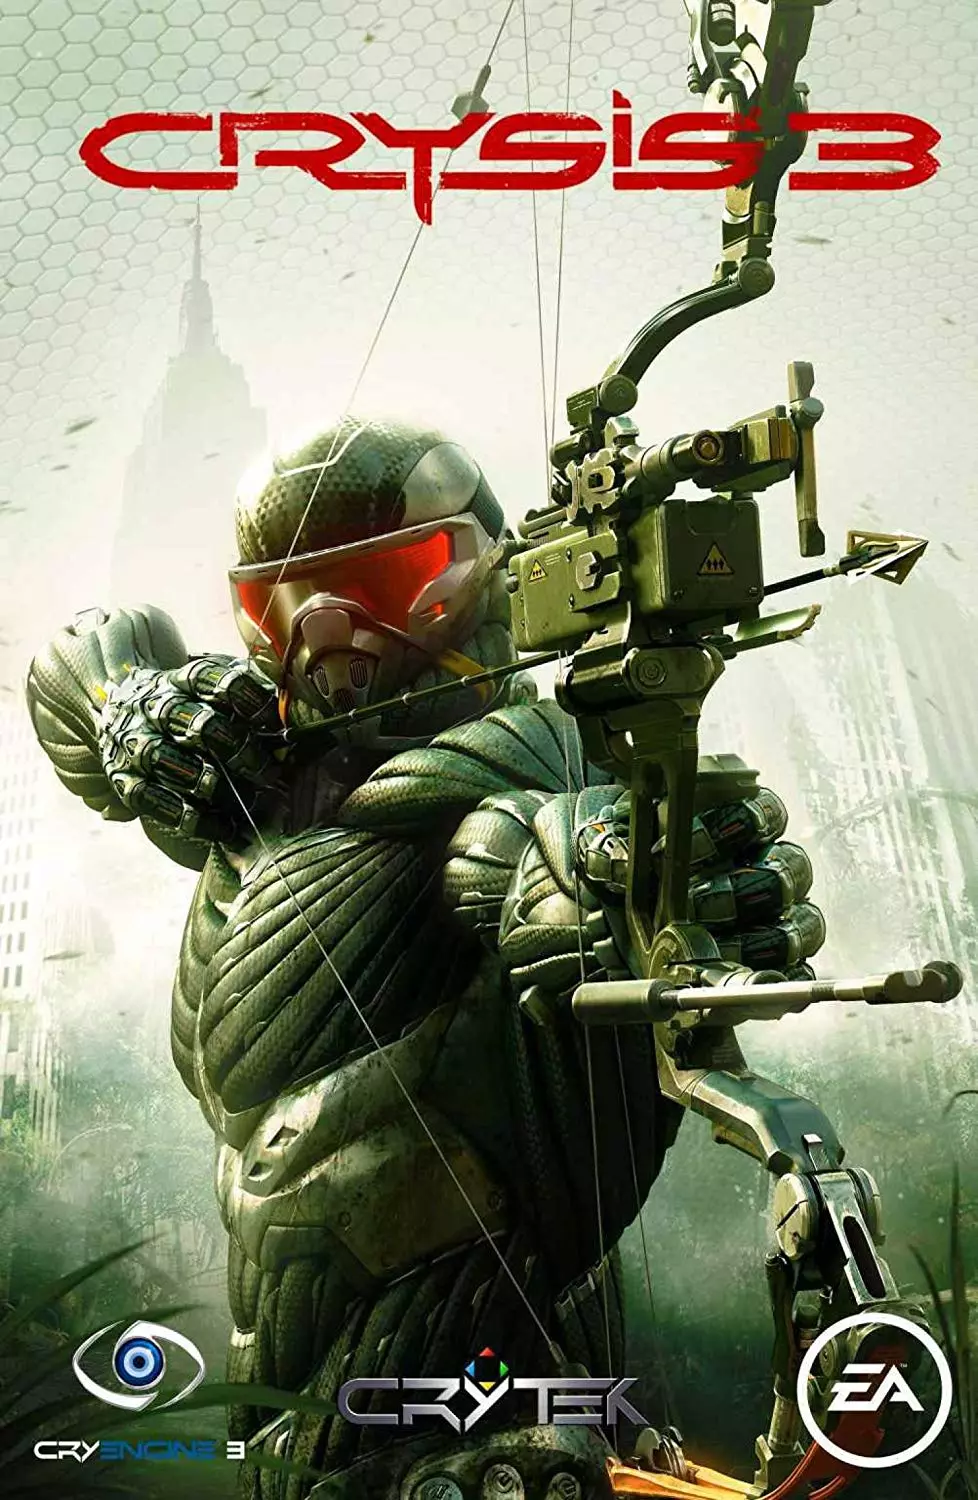 Crysis 3 — мультиплатформенная компьютерная игра, научно-фантастический шутер от первого лица, разработанный немецкой компанией Crytek и изданный Electronic Arts.